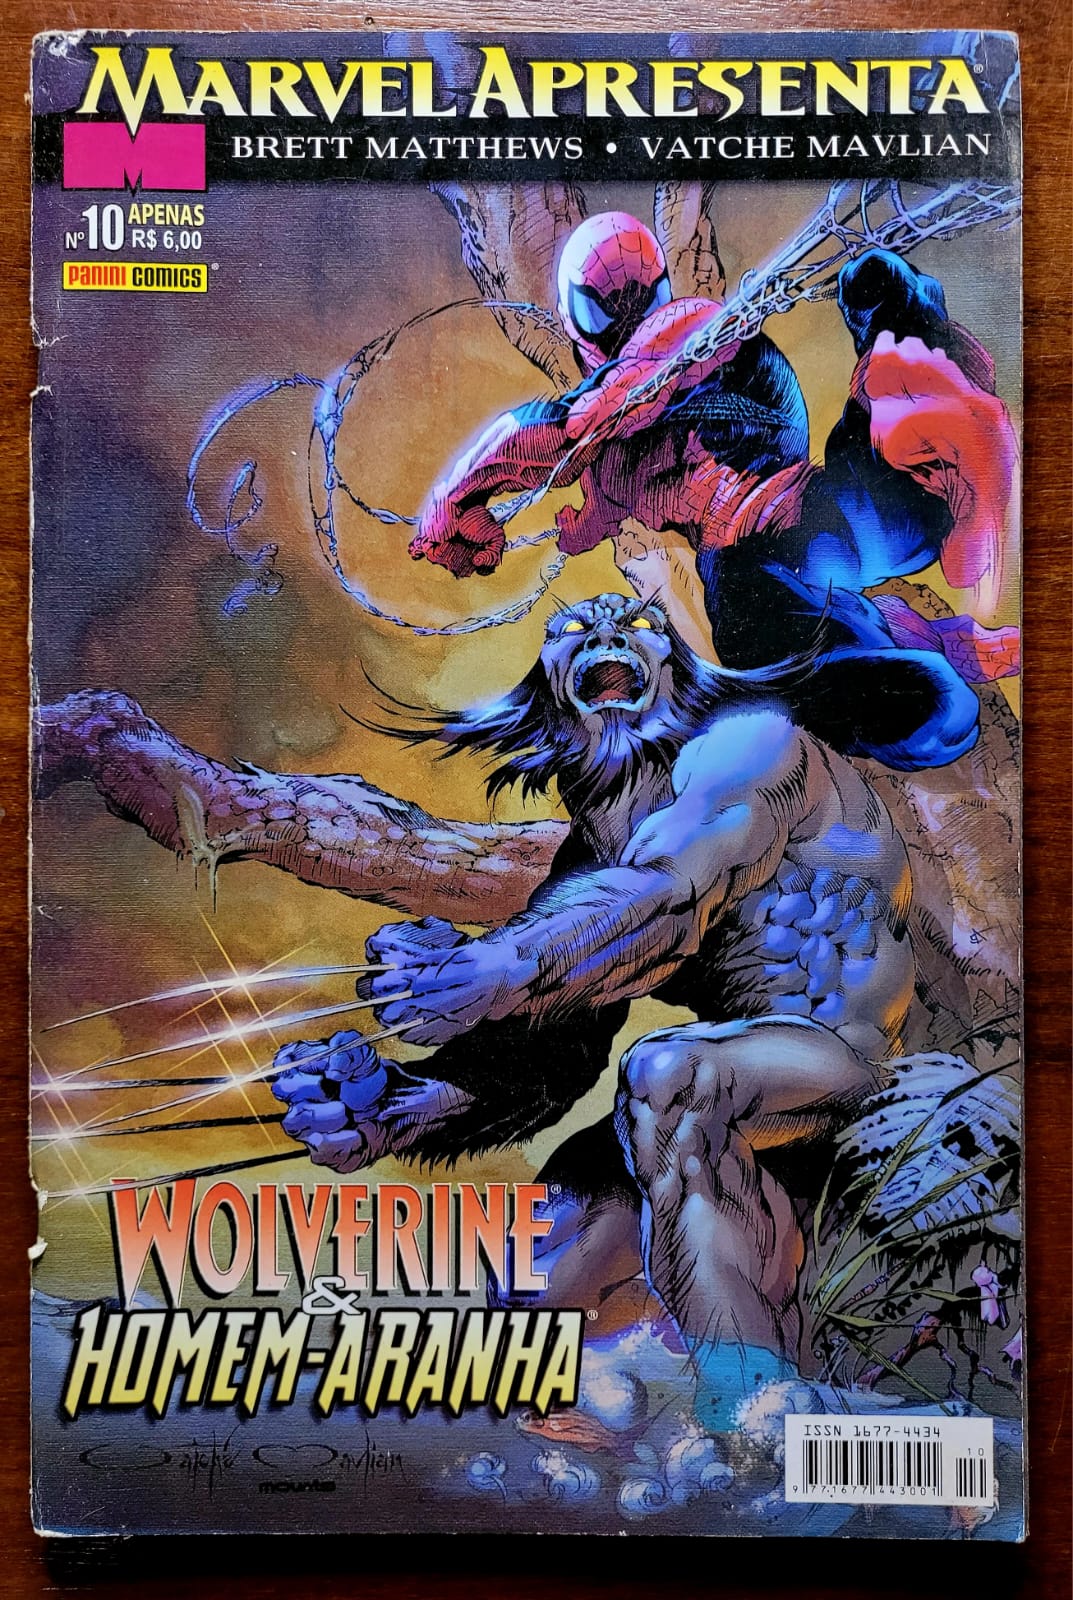 Marvel Apressenta No 10 Wolverine e Homem Aranha 1 Casa do Colecionador